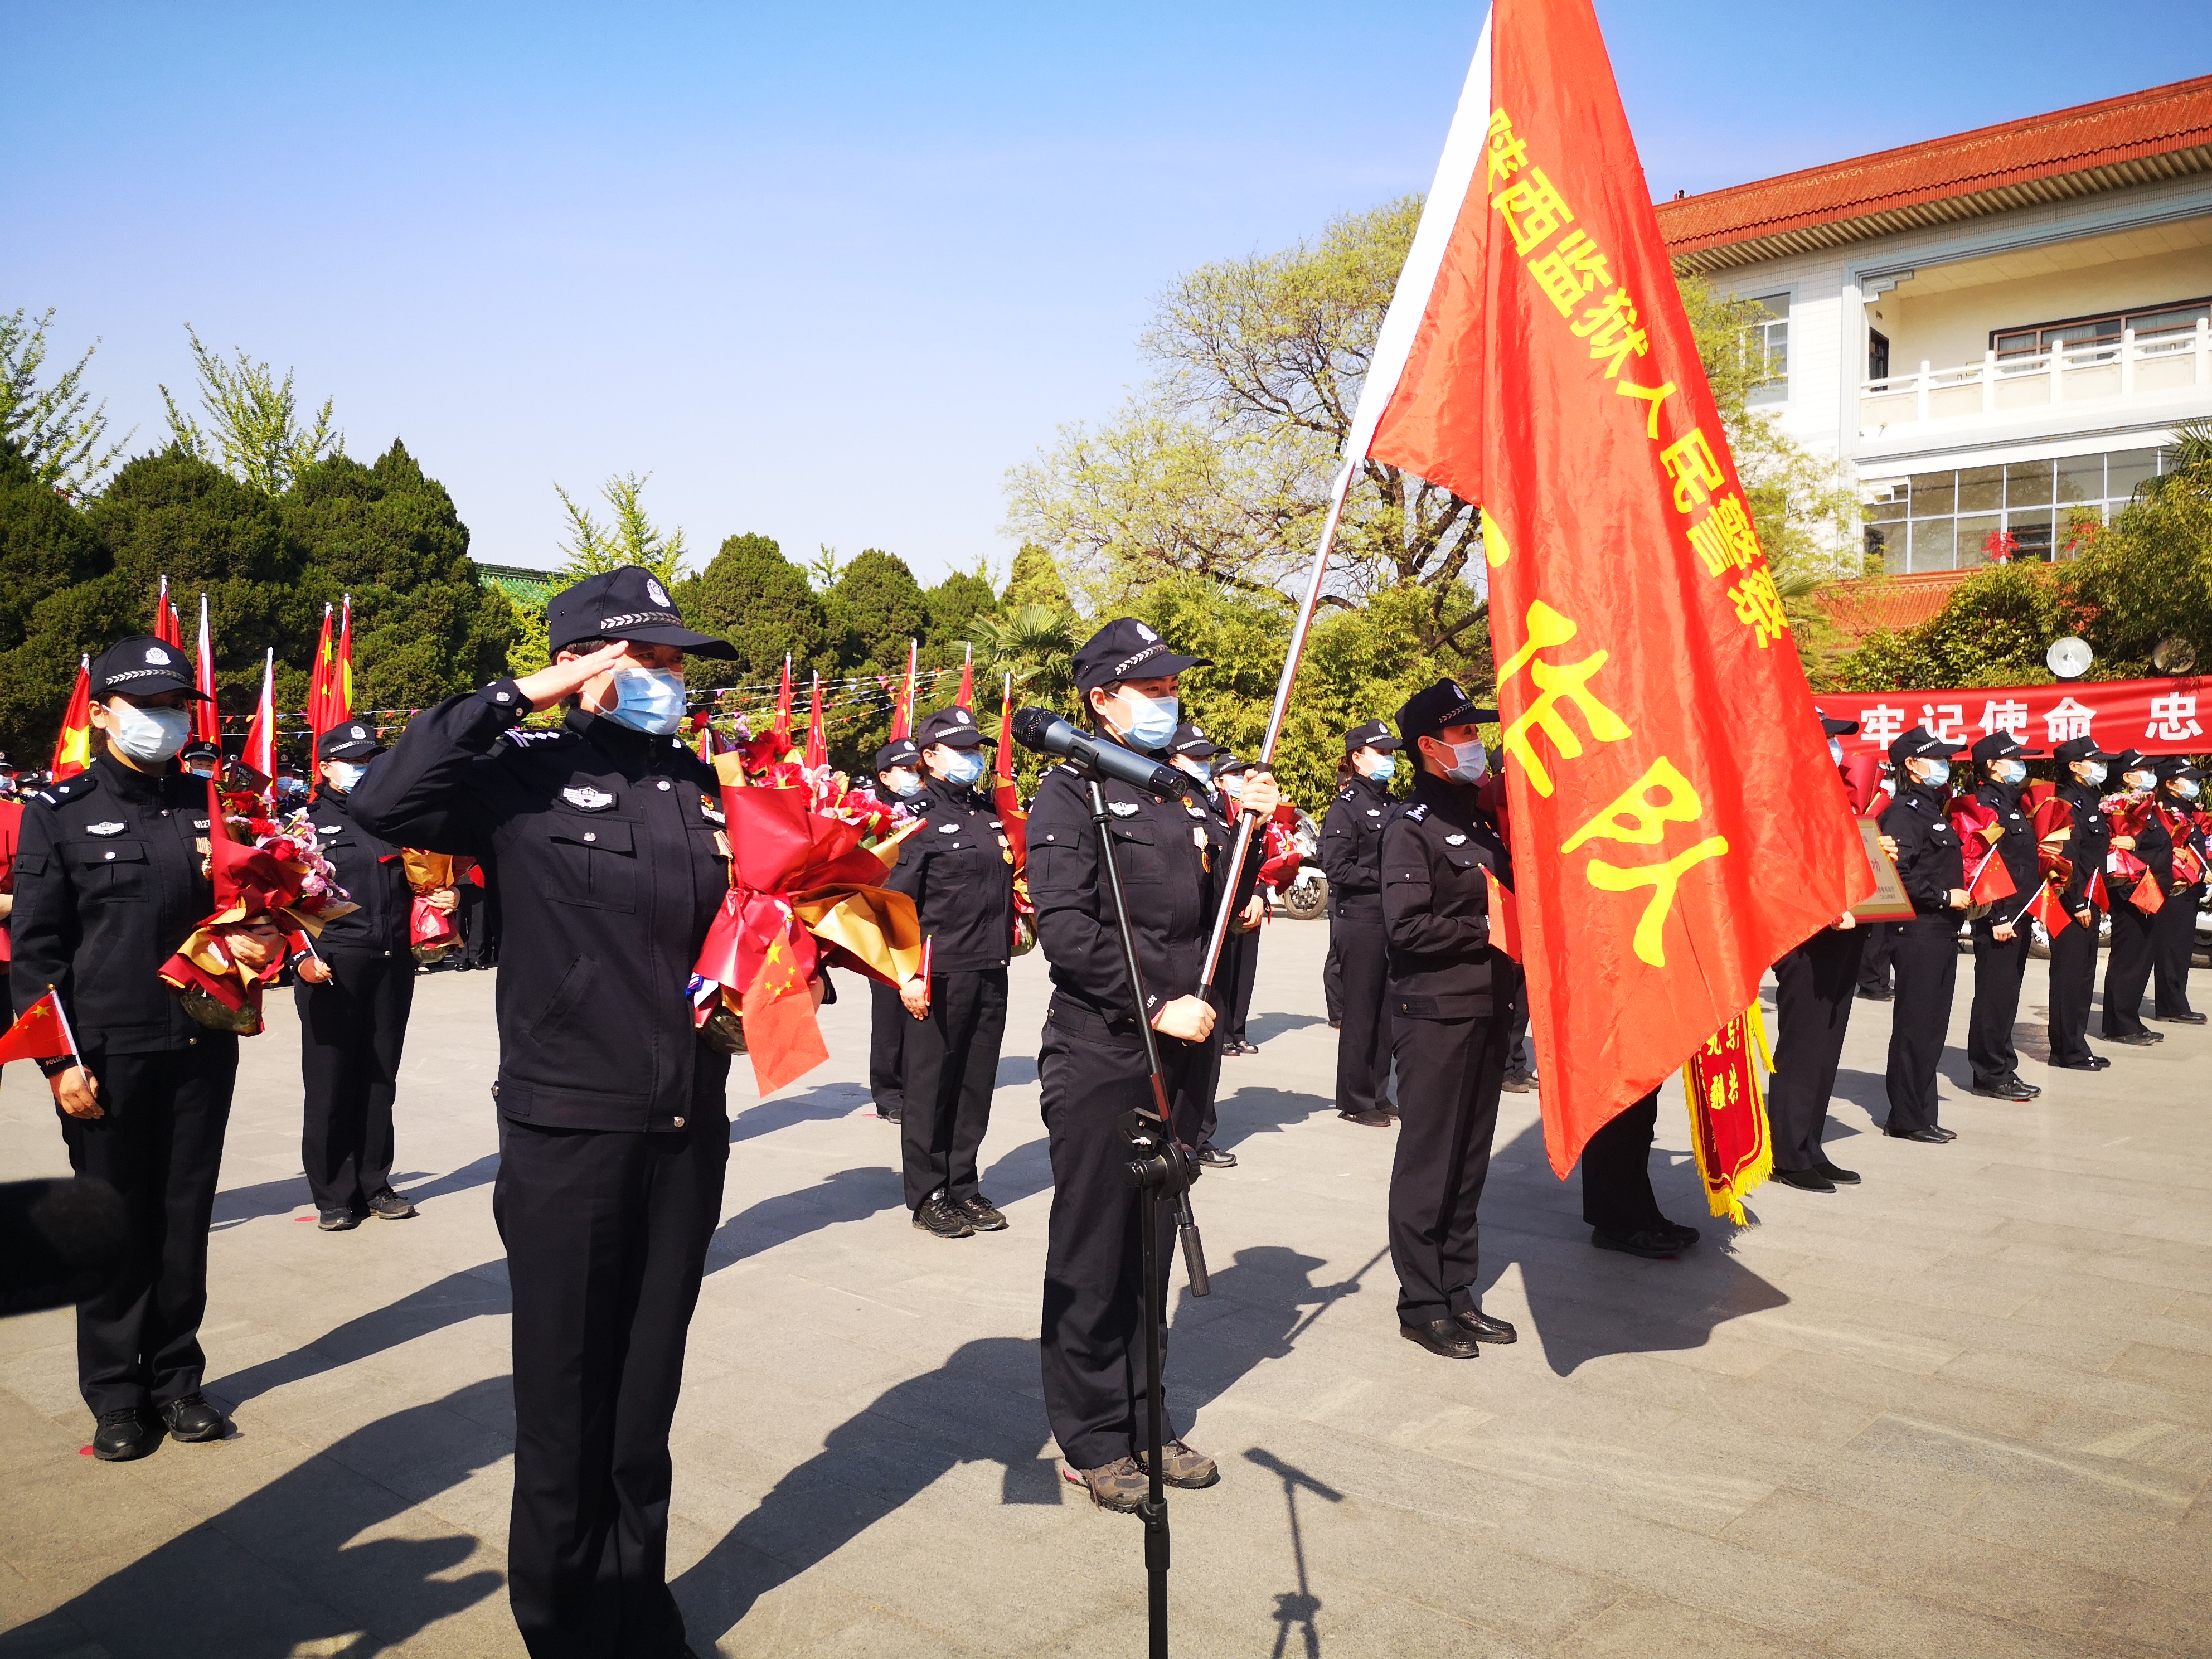 欢迎仪式上领队花薇敬礼报告:陕西监狱人民警察援鄂工作队,应到30人